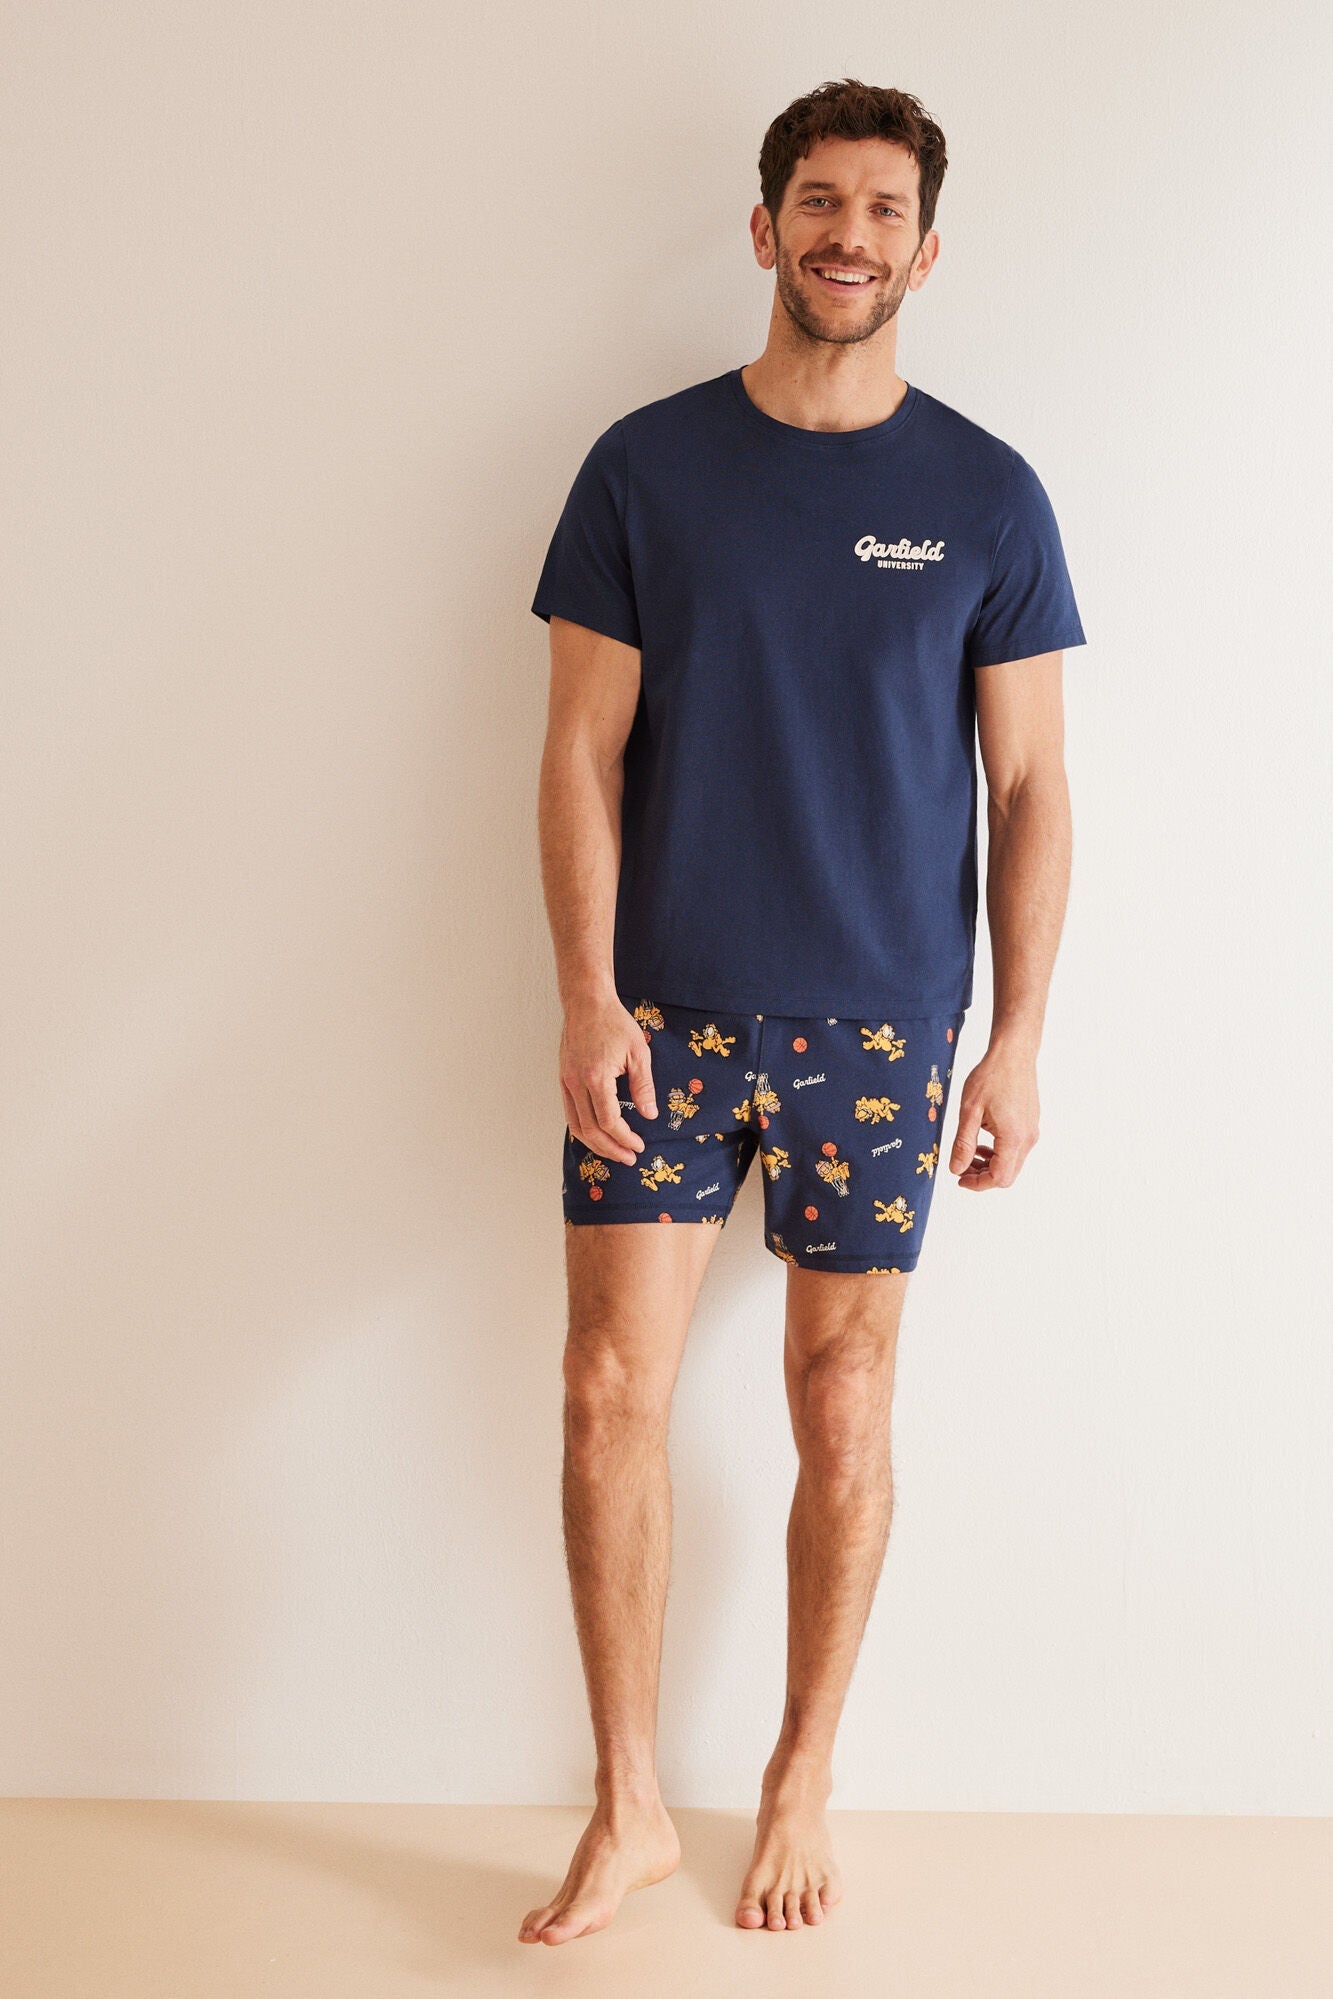 Garfield men's 100% cotton pajamas